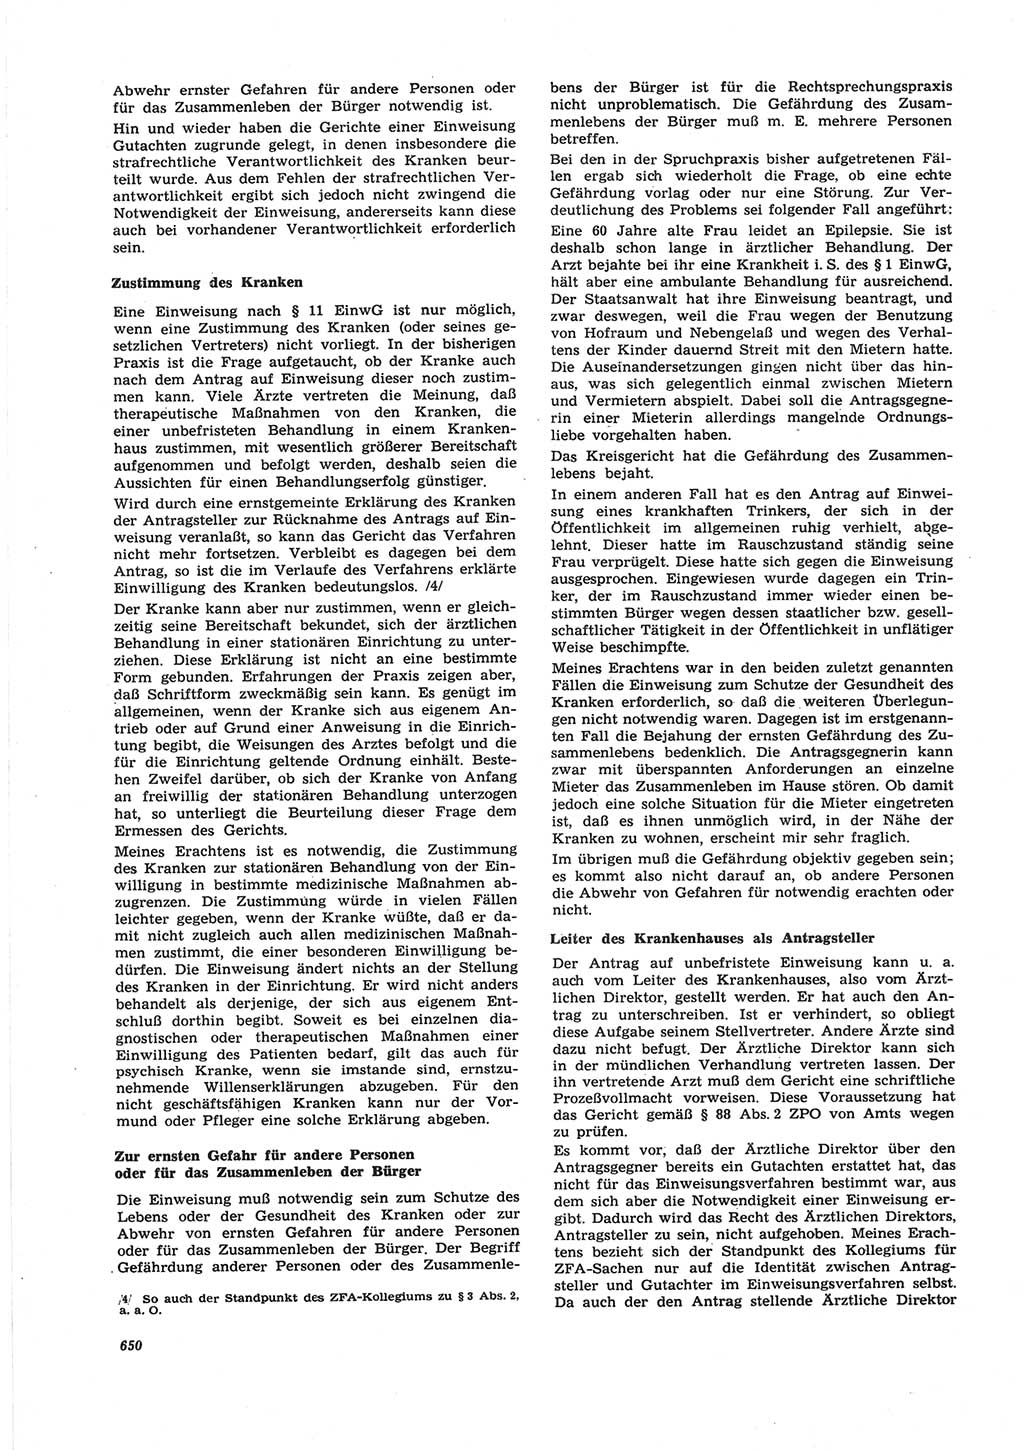 Neue Justiz (NJ), Zeitschrift für Recht und Rechtswissenschaft [Deutsche Demokratische Republik (DDR)], 25. Jahrgang 1971, Seite 650 (NJ DDR 1971, S. 650)